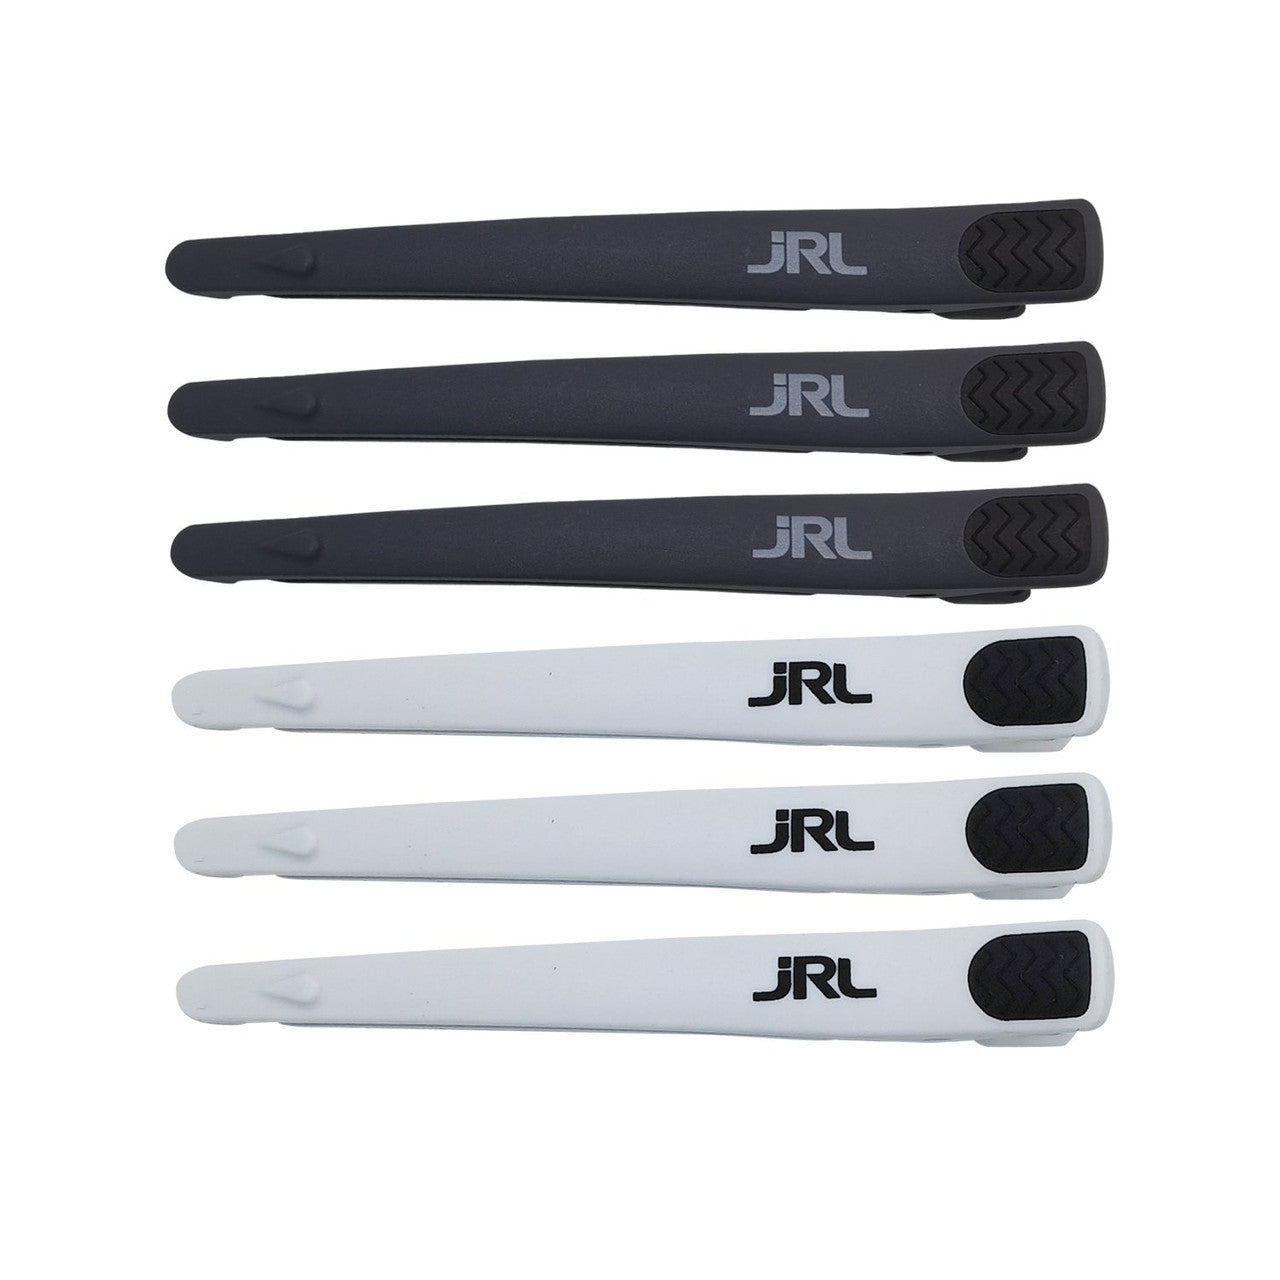 JRL Hair Clips - 6 Pack